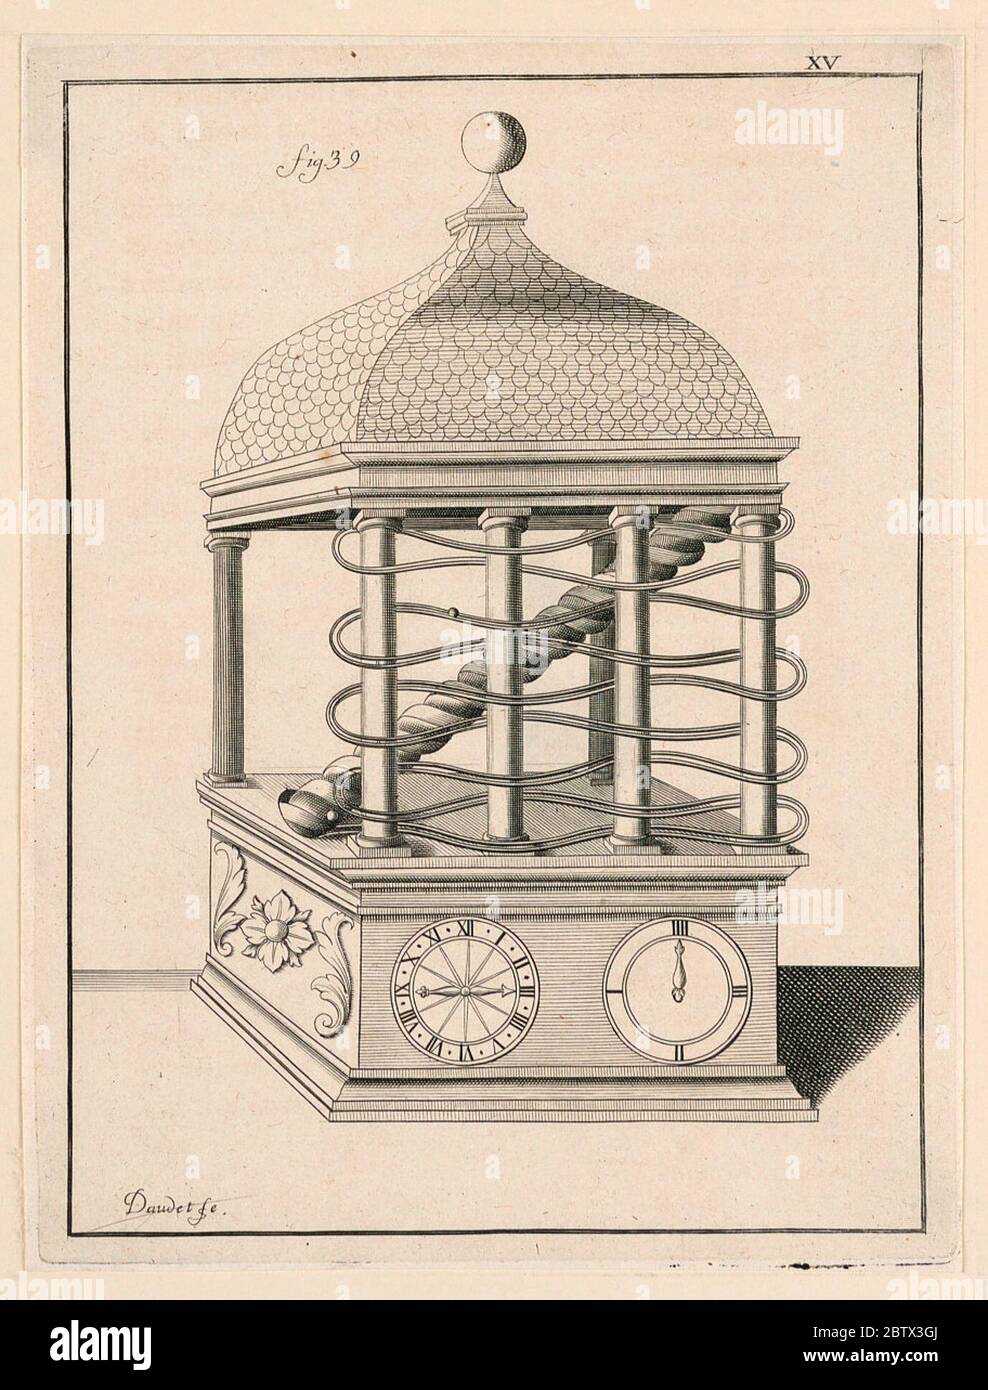 Design For a Clock pl XV from Recueil dOuvrages Curieux de Mathematique et de Mecanique ou Description du Cabinet. Research in Progress Stock Photo